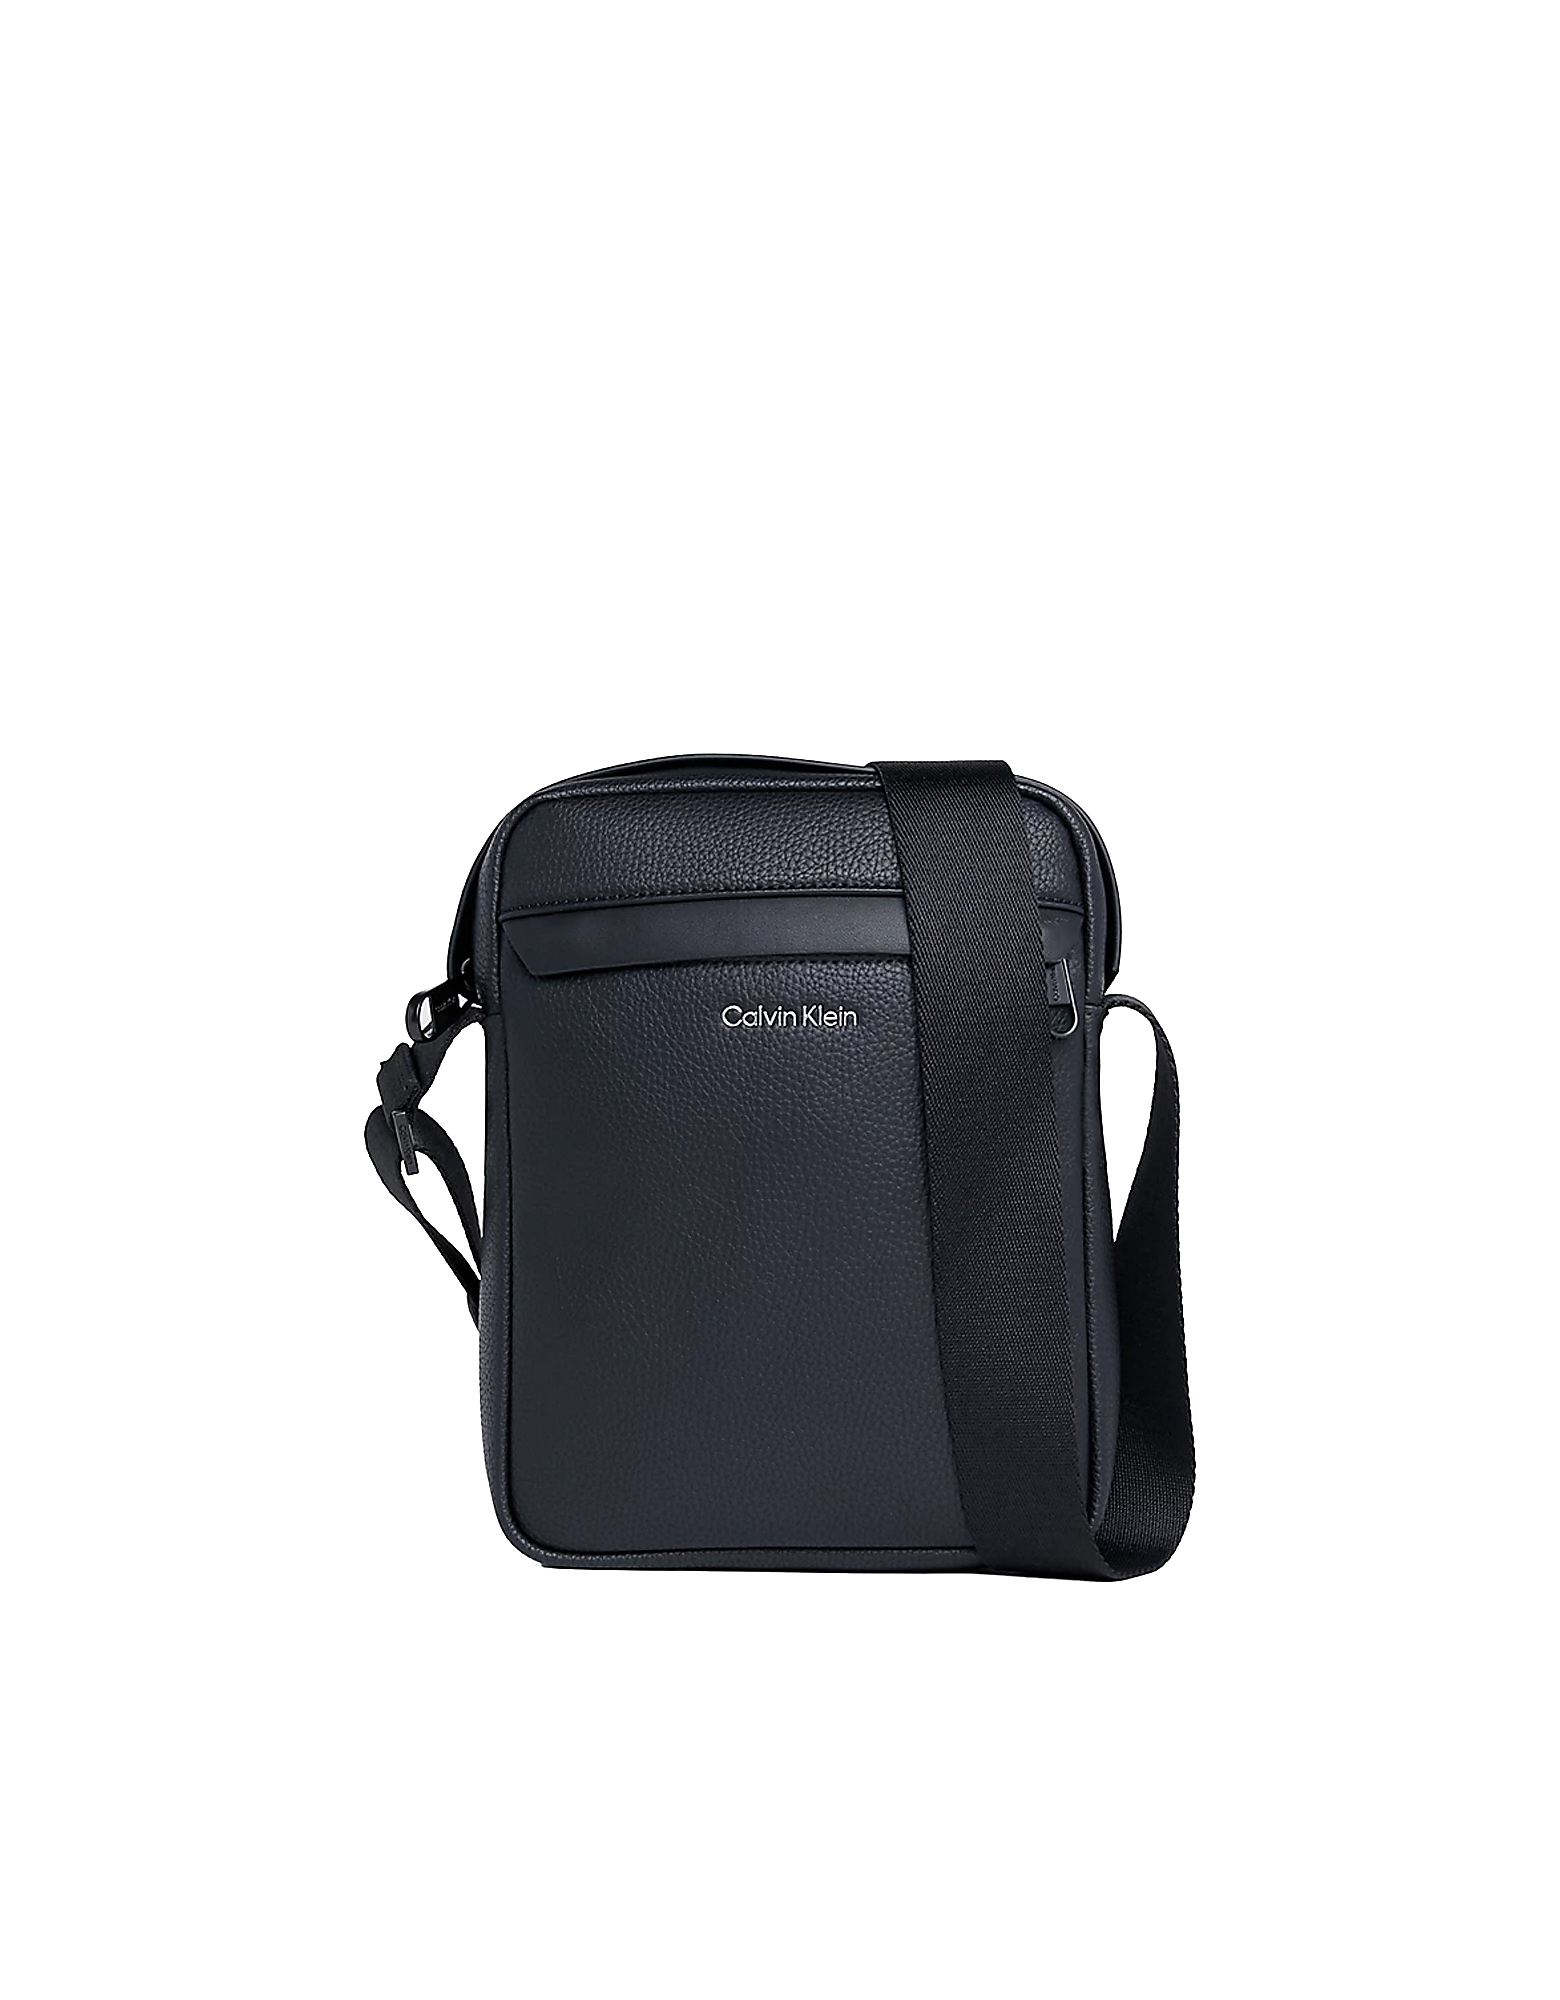 Calvin Klein Collection Designer Men's Bags Men's Black Crossbody Bag